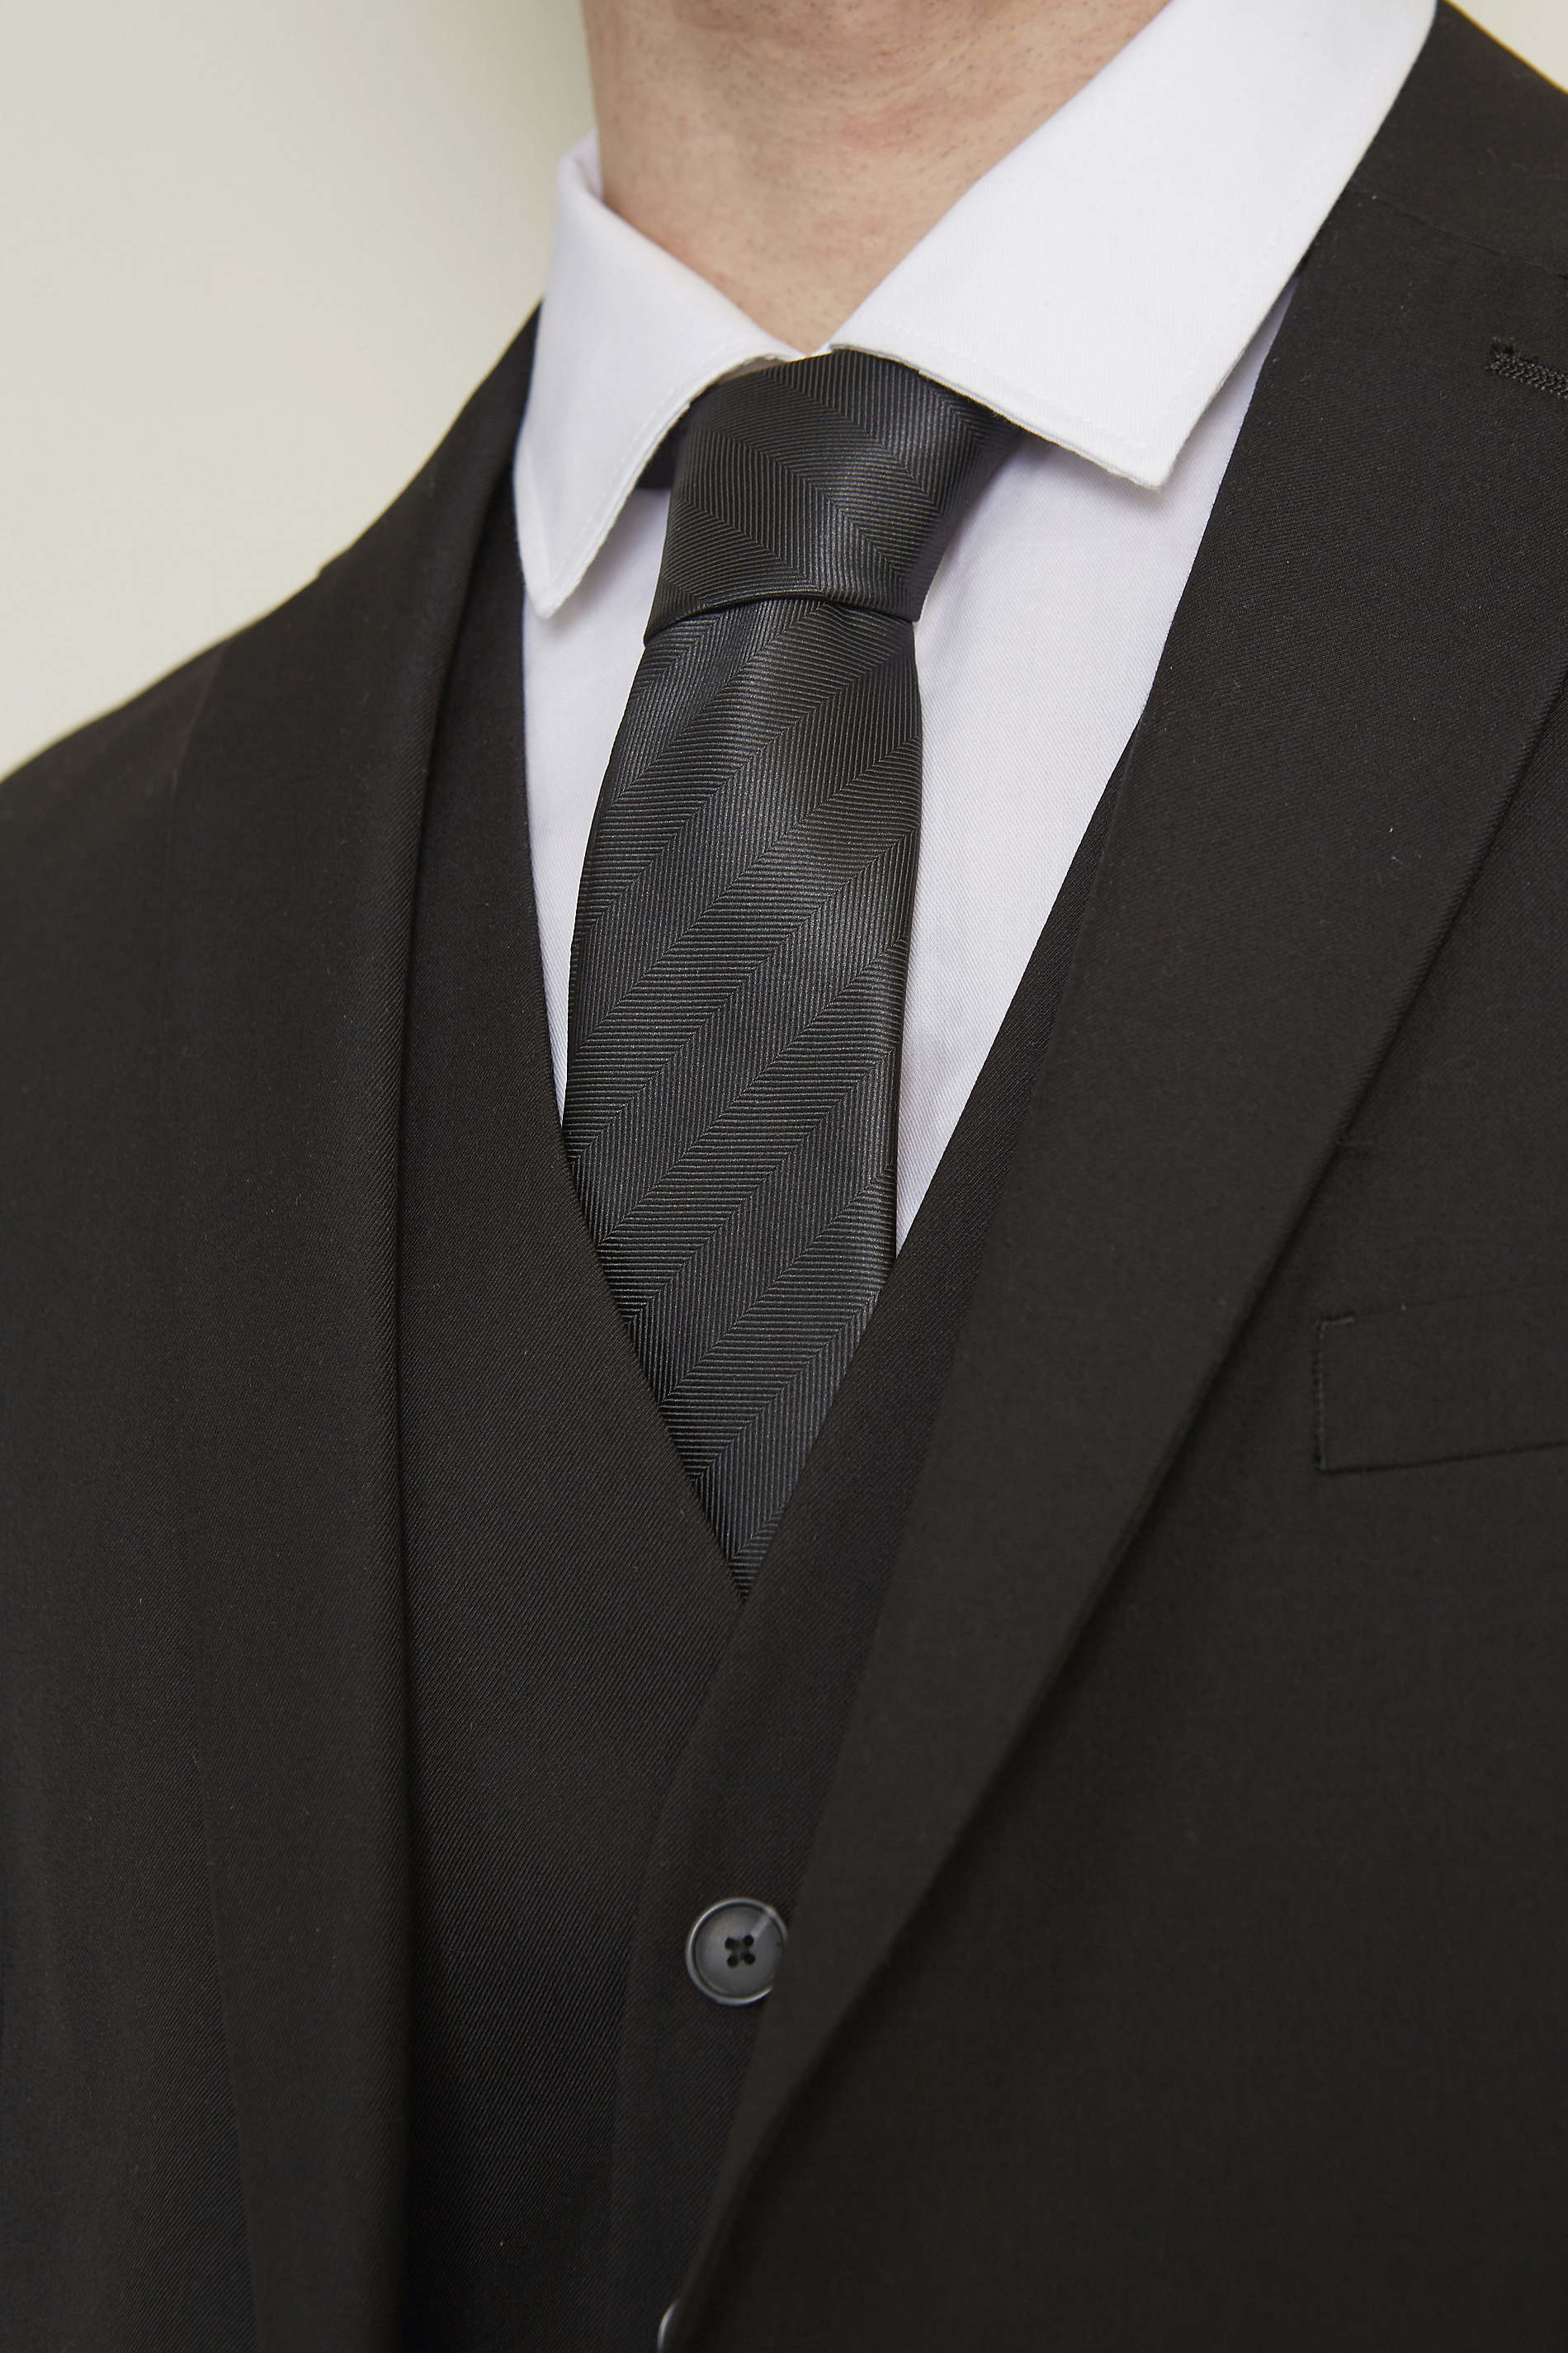 Cravate club faux uni<p>La cravate club est un essentiel du vestiaire masculin. Son faux uni apporte sobriété et élégance aux tenues formelles.<p> NEOBLU TOMMY